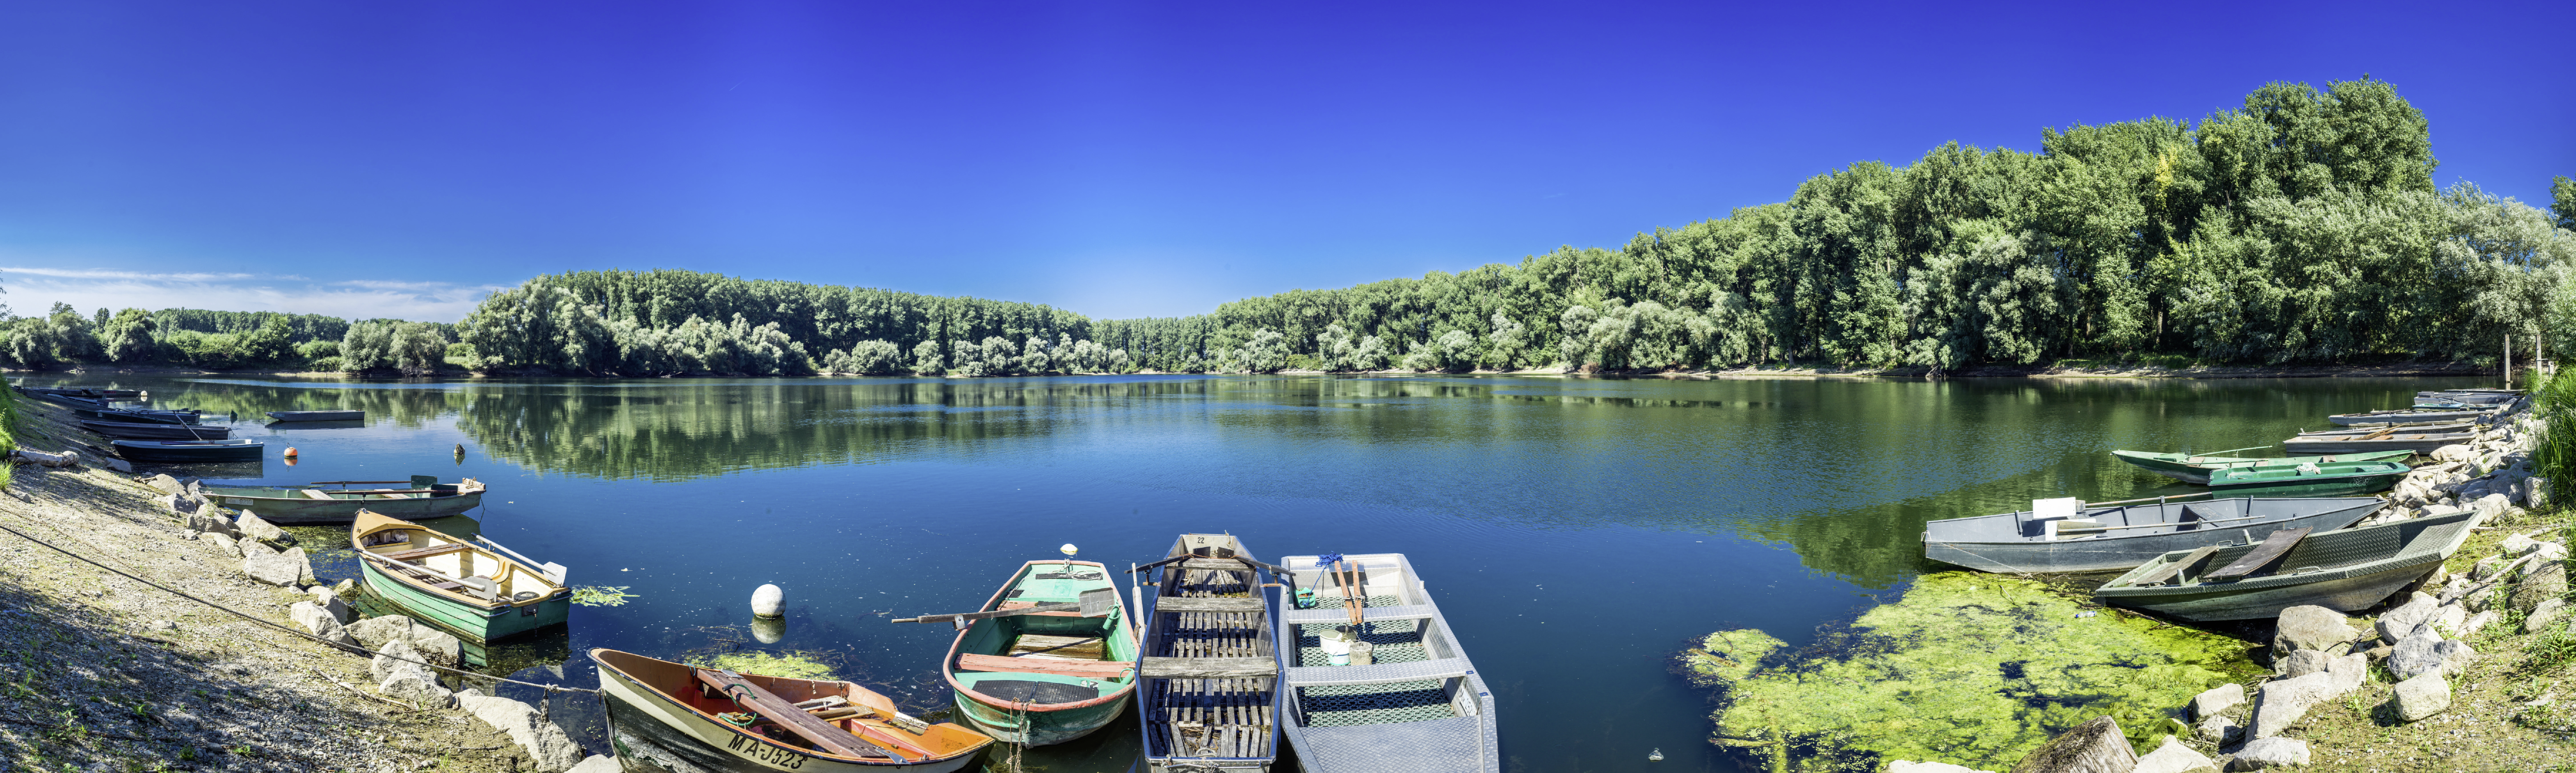 Ruderboote liegen am Ufer eines Sees